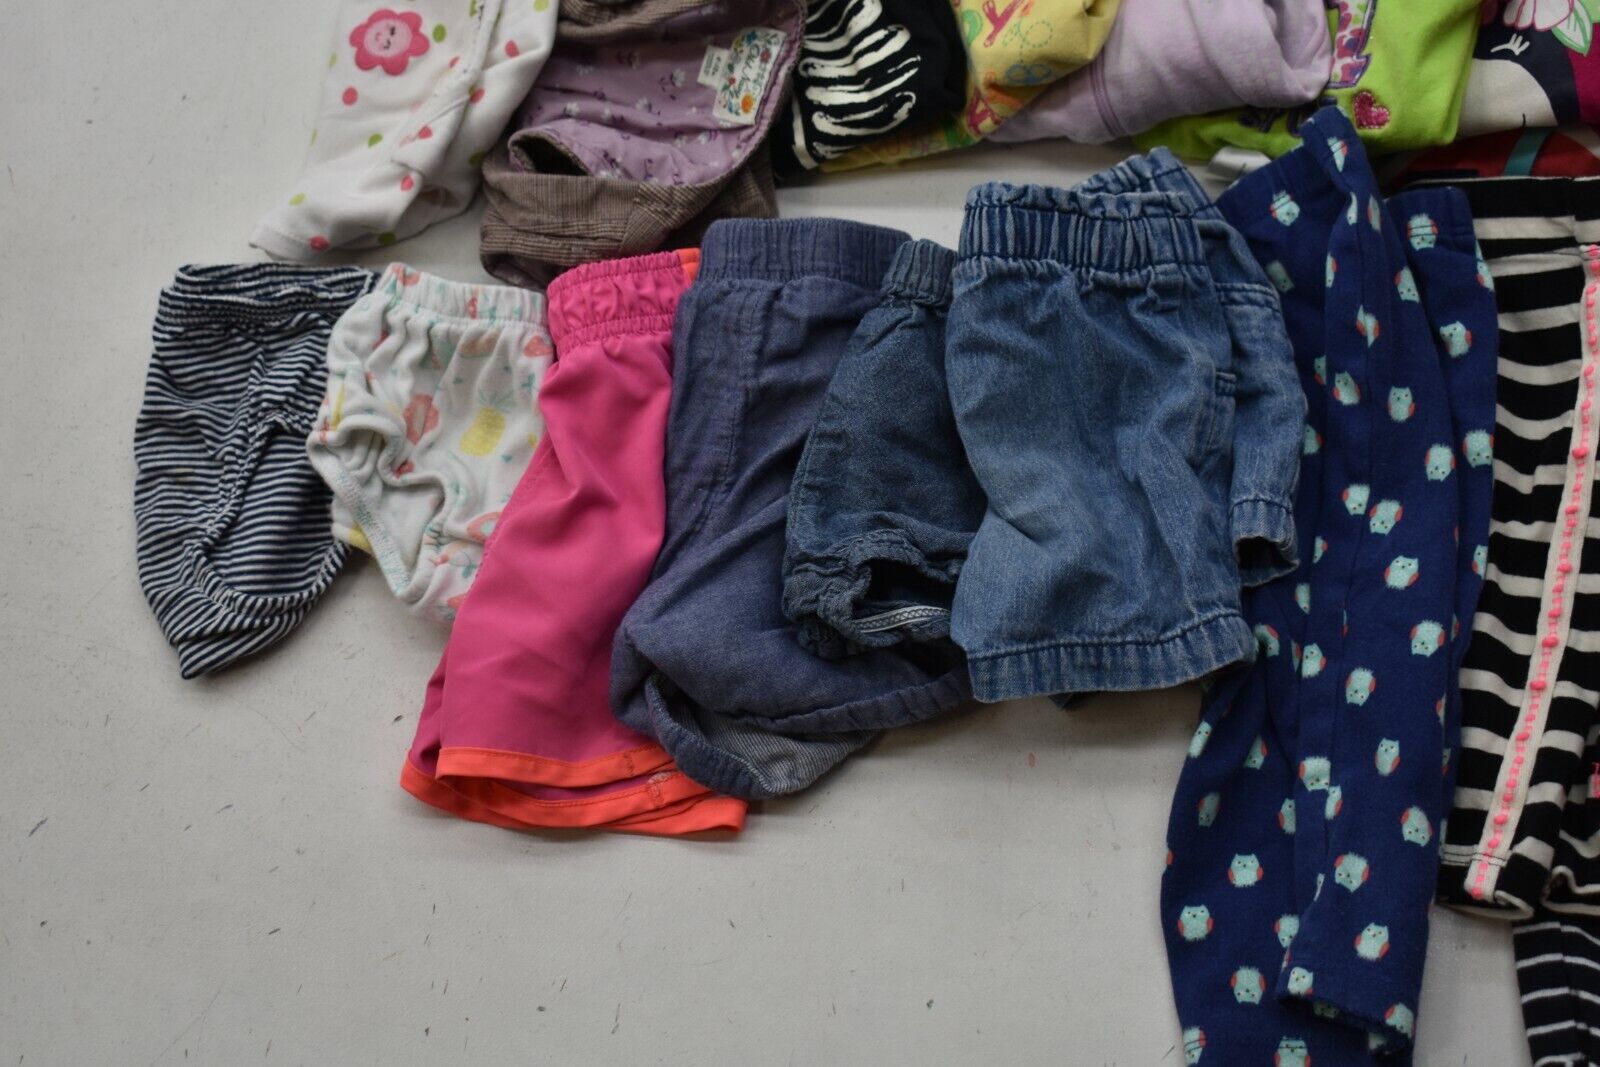 Wholesale Bulk Lot of 35 Girls Size 6-12 Mixed Season Pants Shirts Bottoms Mixed Brand - фотография #5